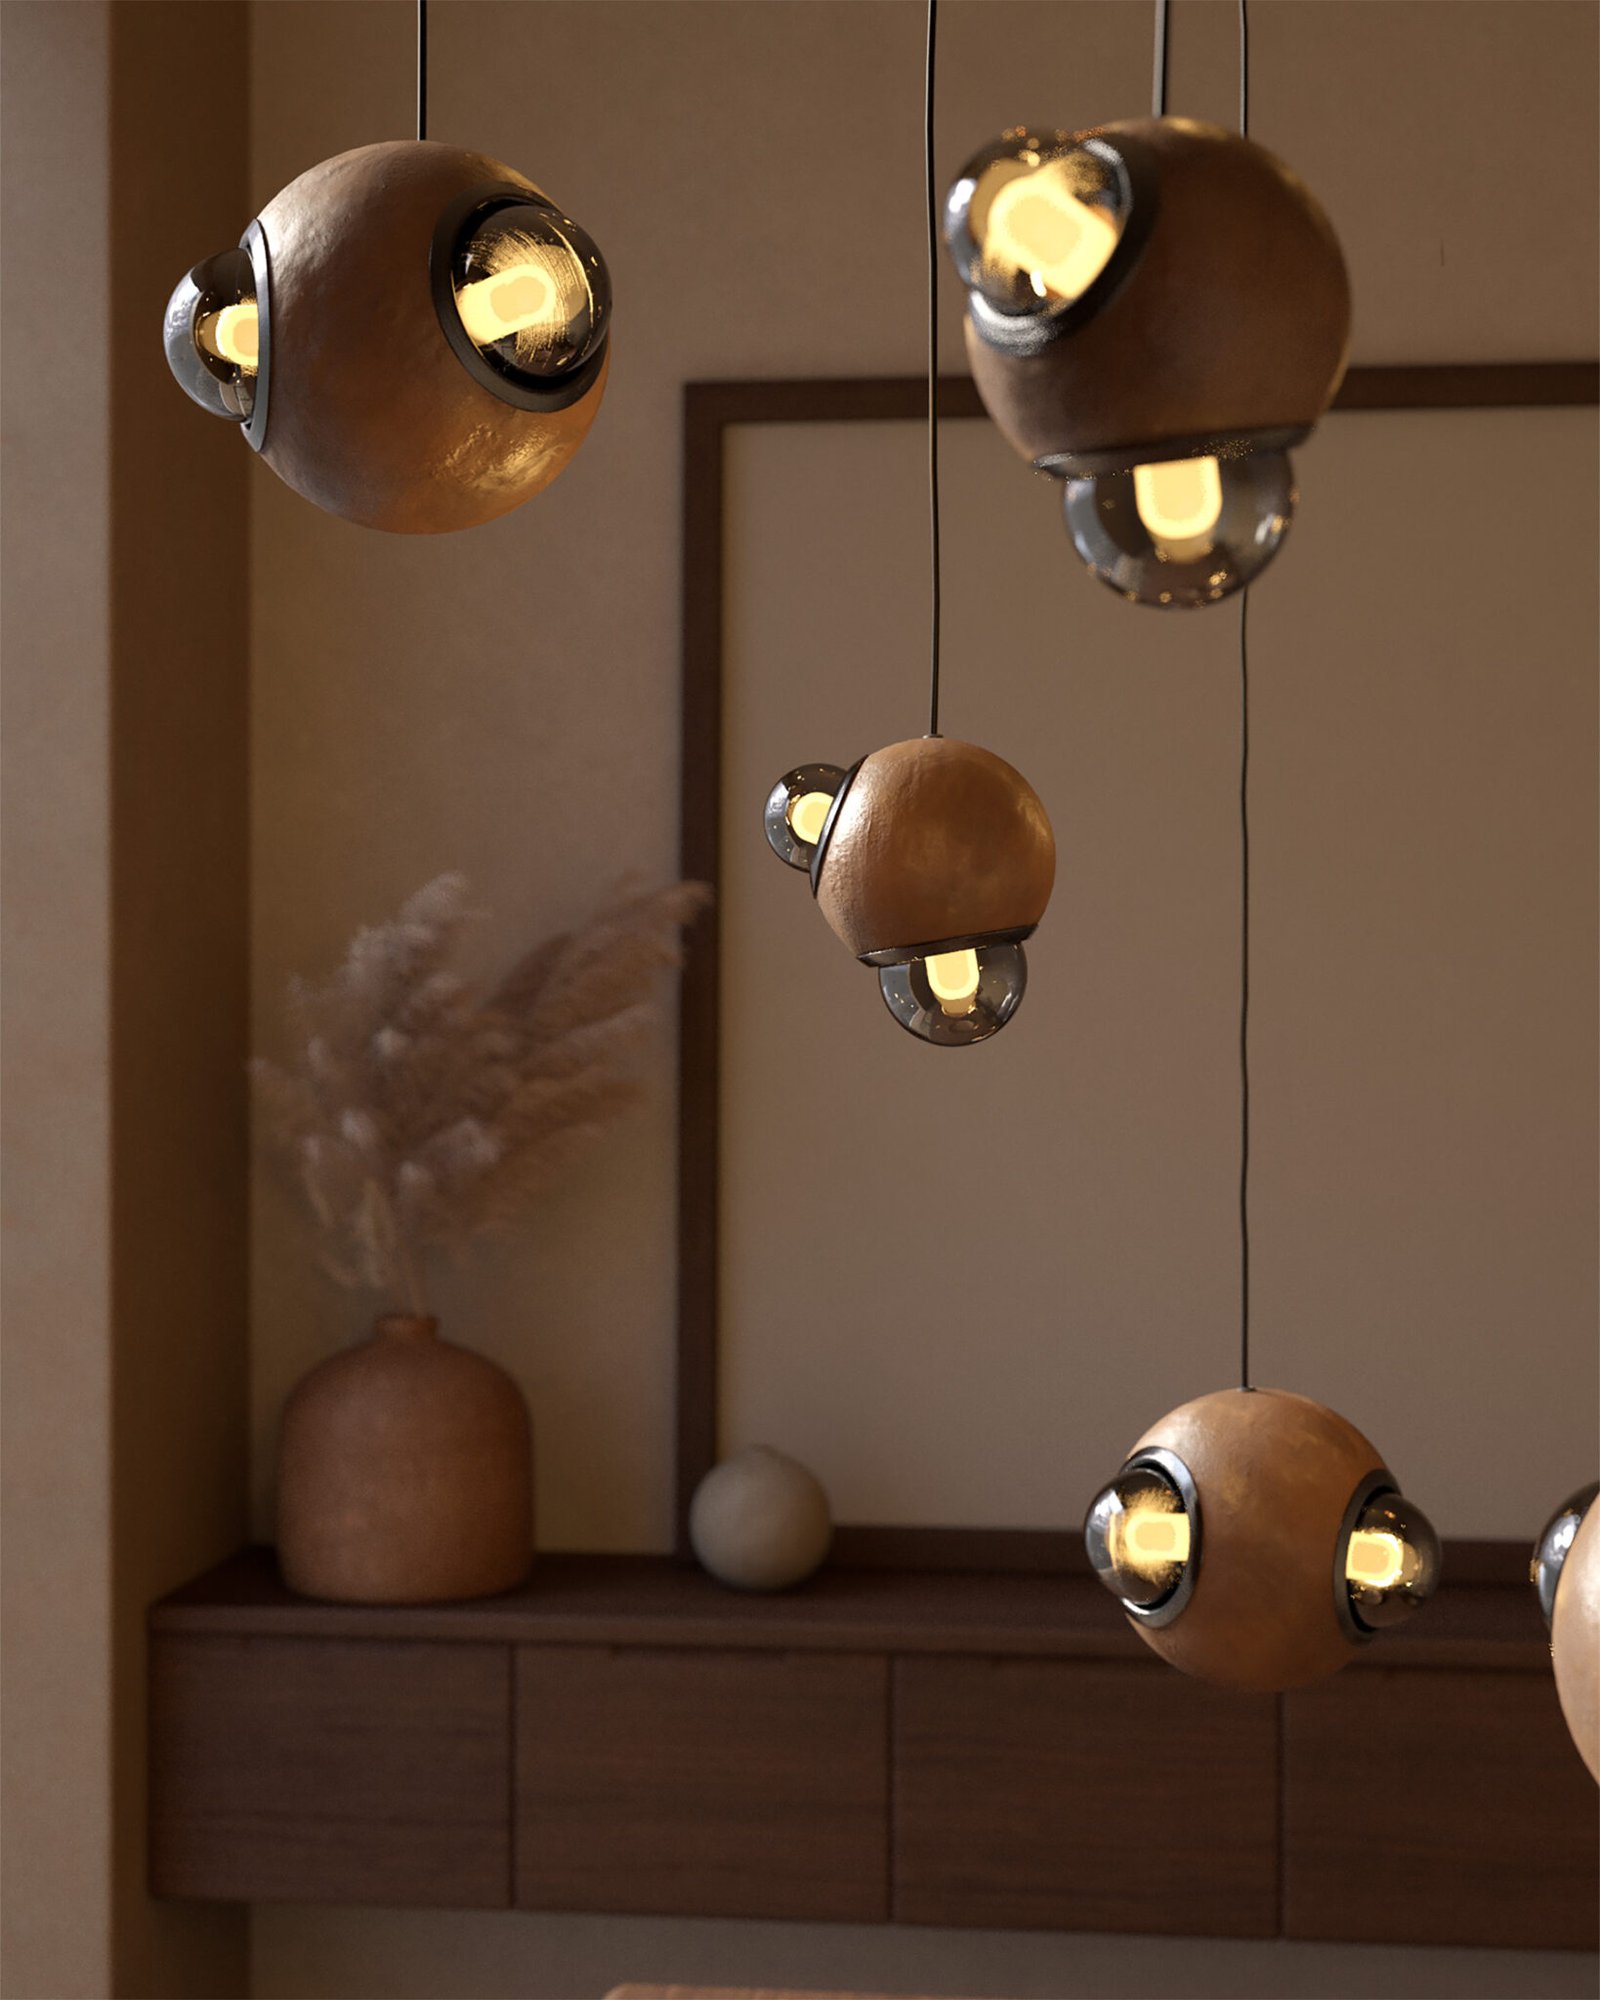 Lámparas HUMO esferas de barro moteado con difusores de vidrio ahumado y detalle de aluminio anodizado color negro diseñadas por Bandido Studio en cocina.